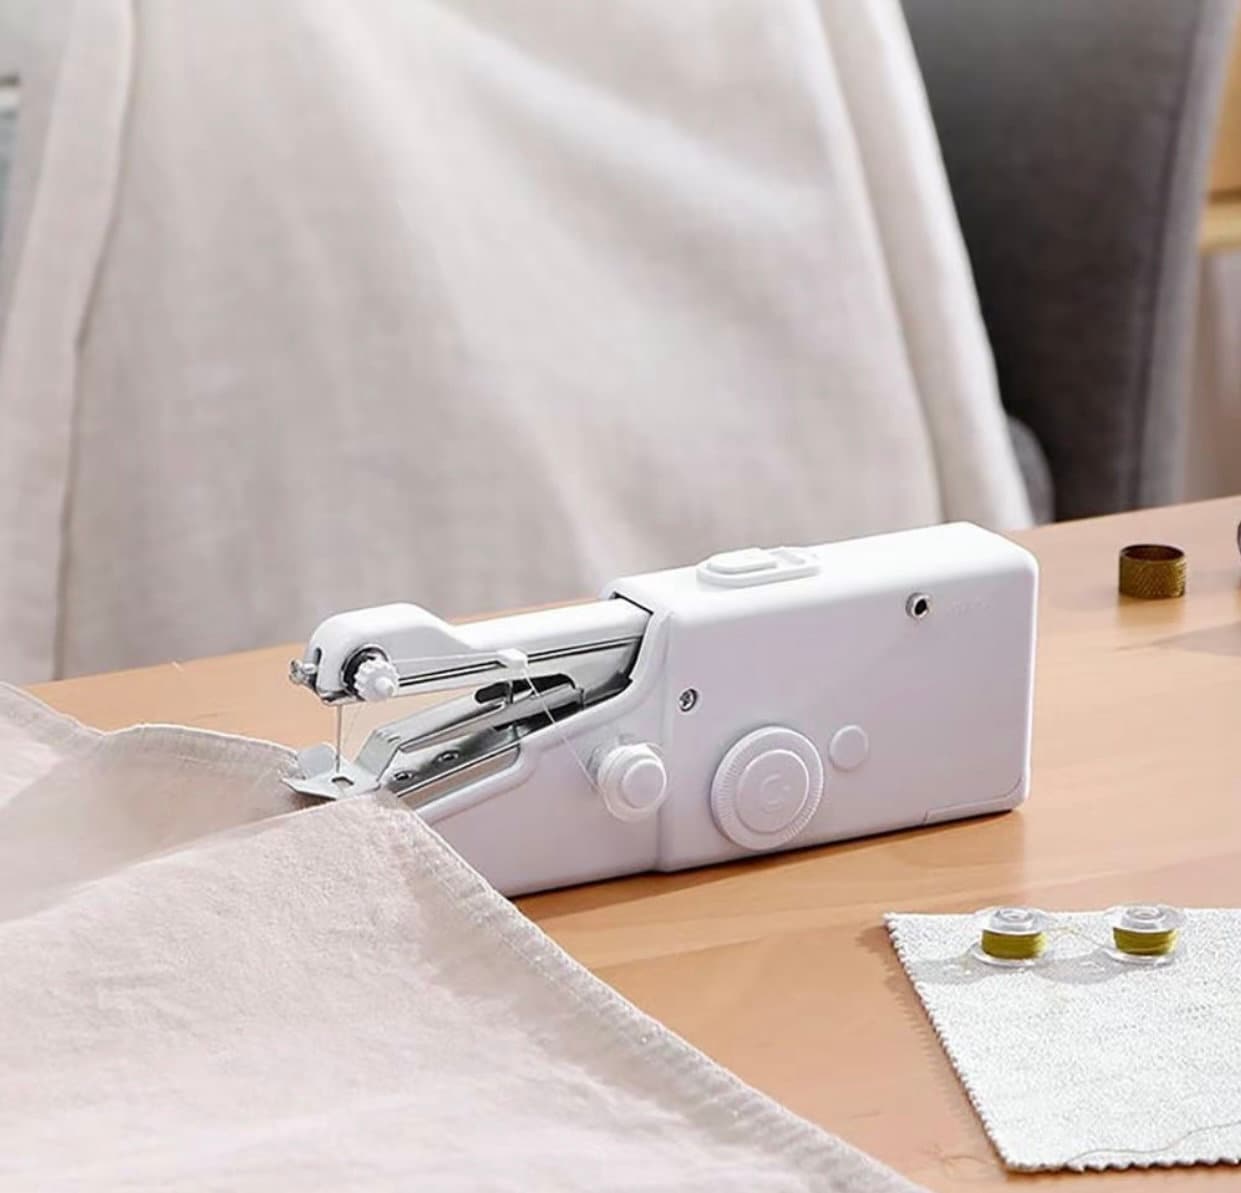 Sunbeam White Cordless Handheld Sewing Machine - White